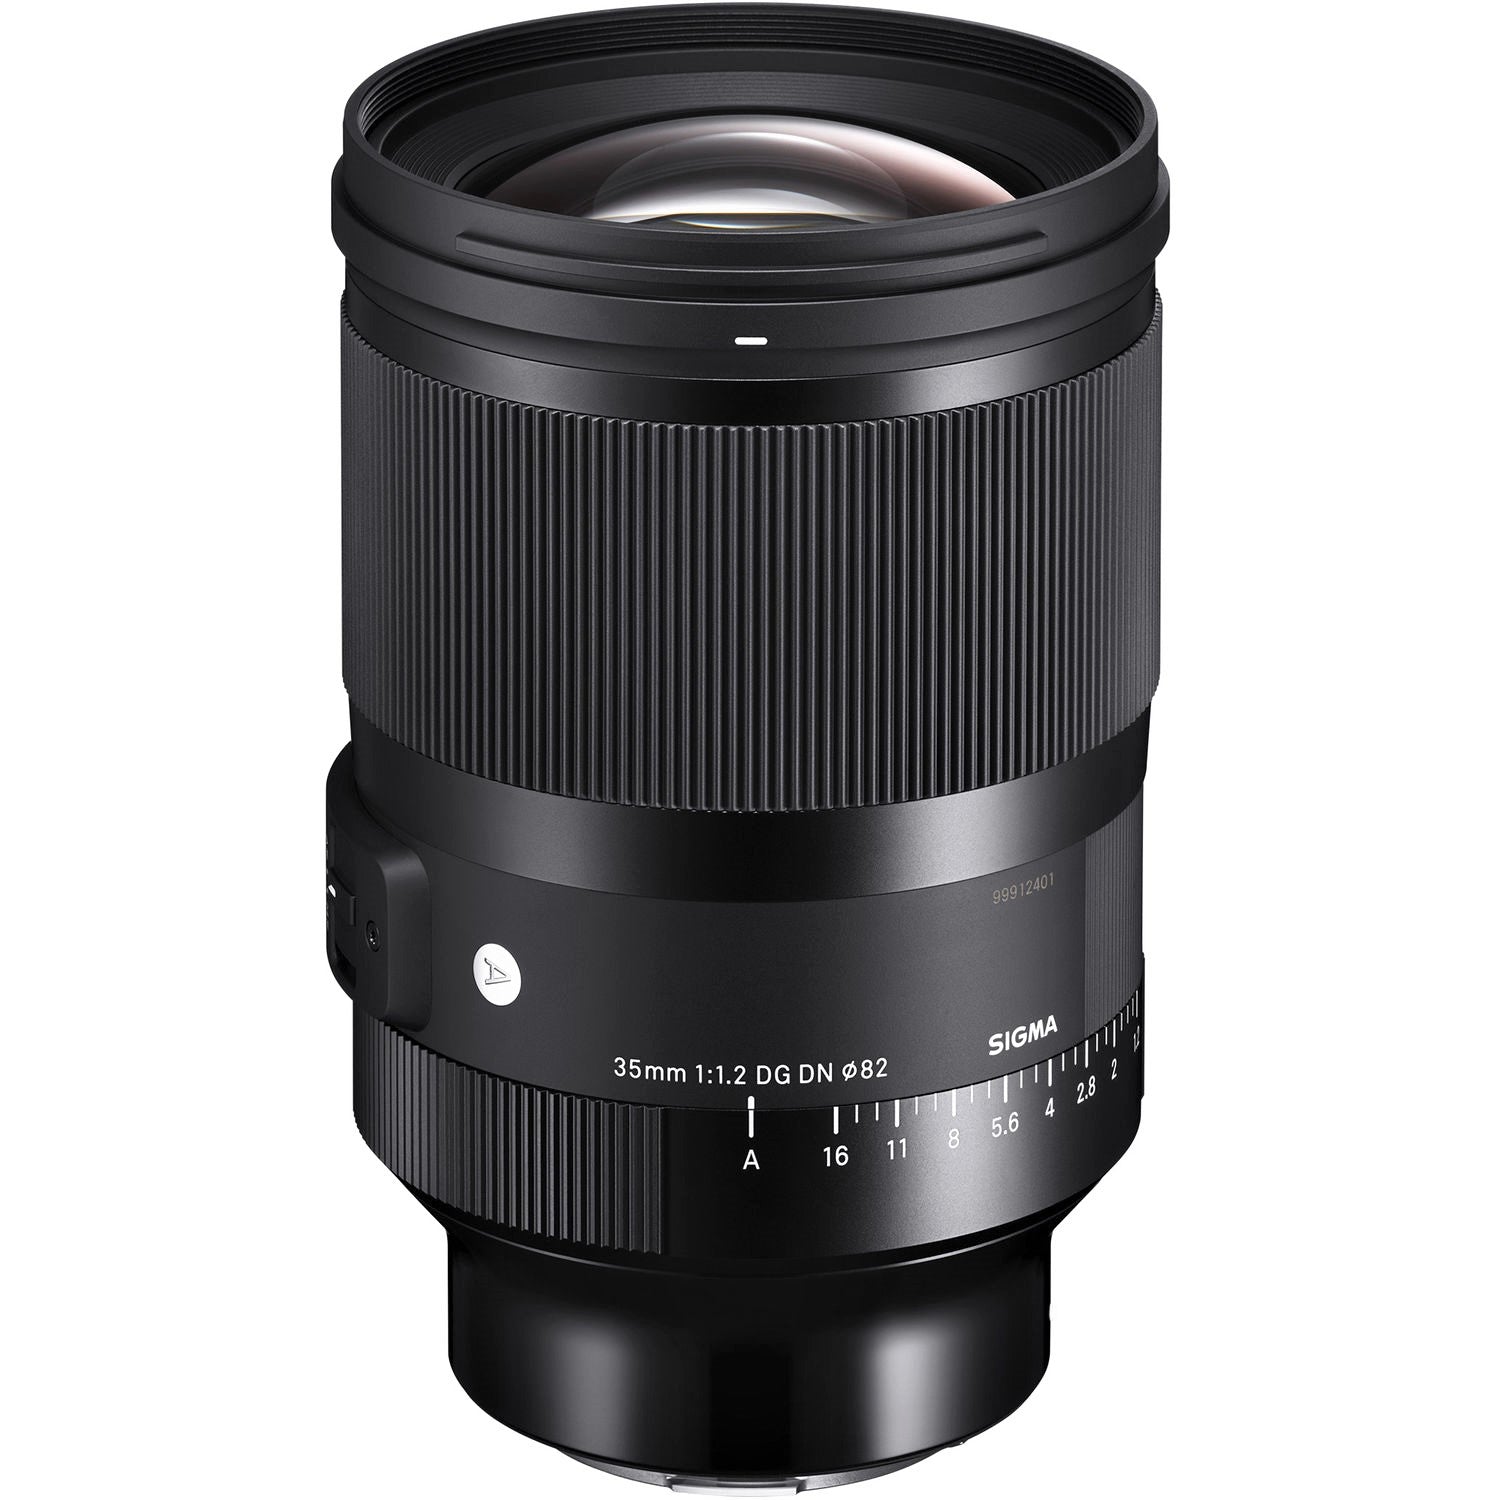 Sigma 35mm F1.2 DG DN Art Lens for Sony E